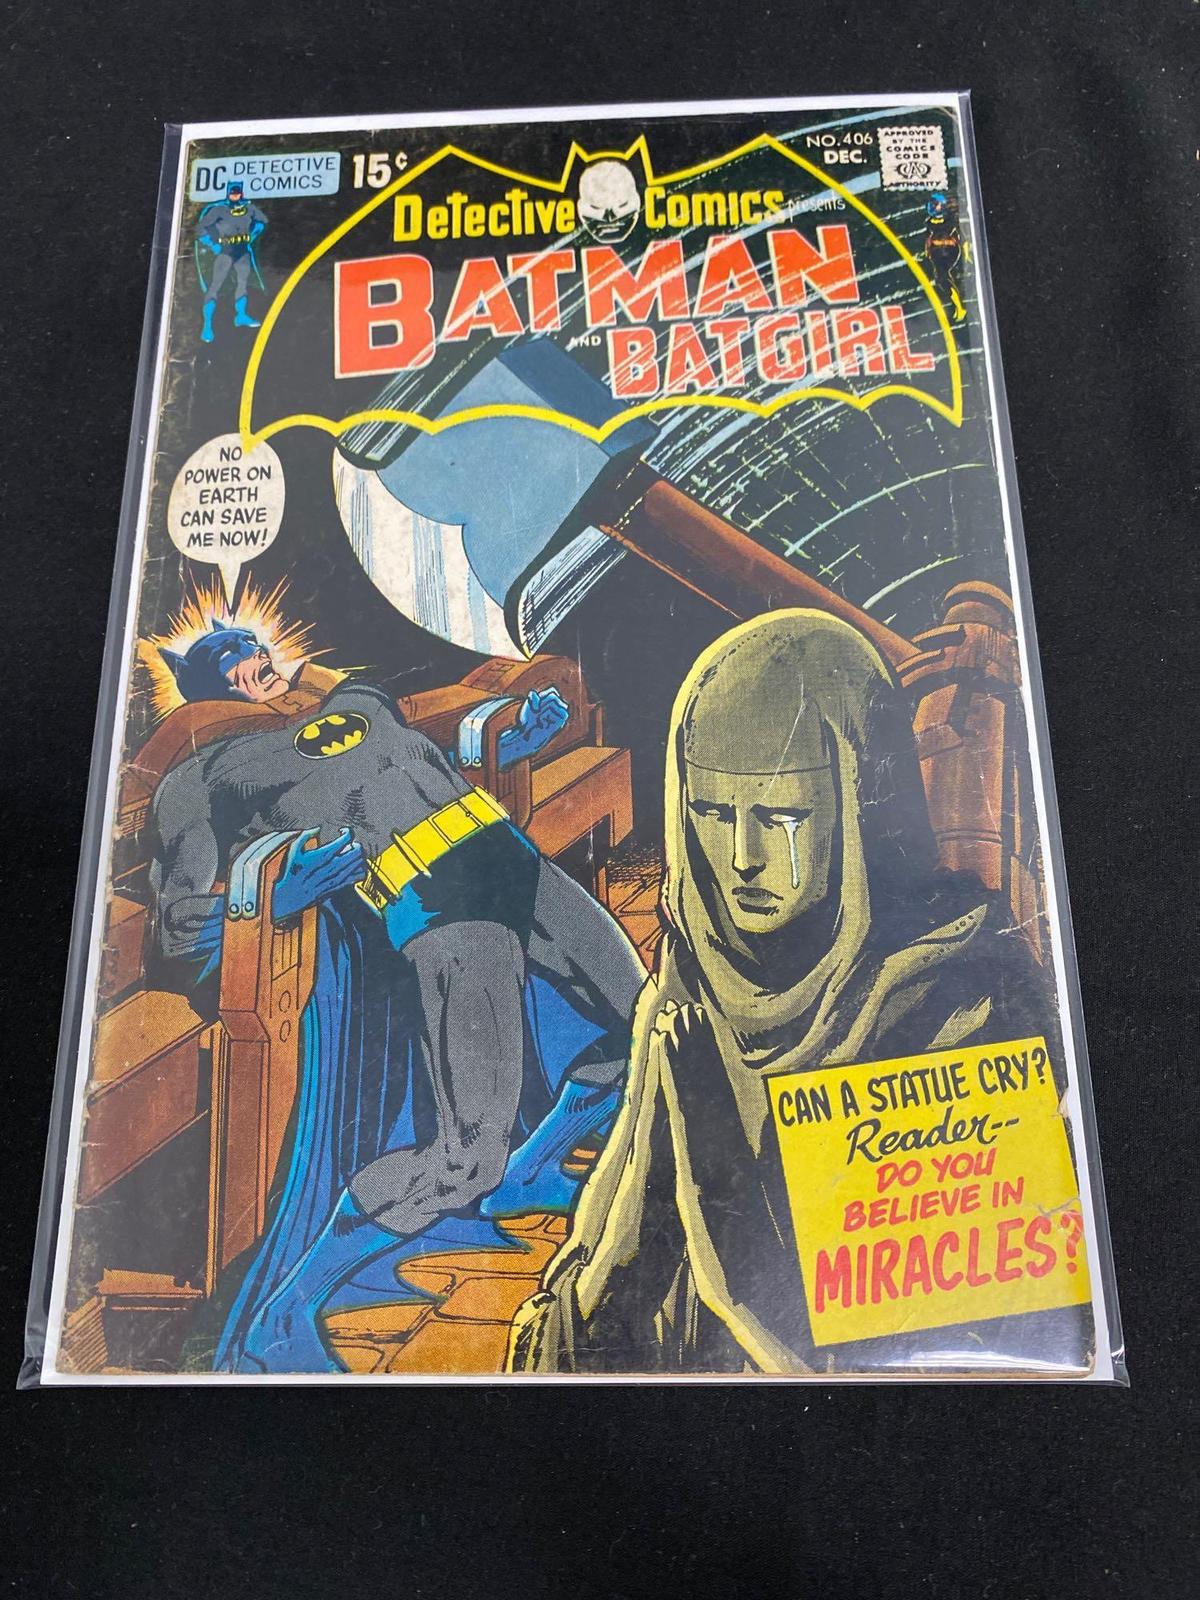 Detective Comics Presents Batman And Robin #406-Comic Book